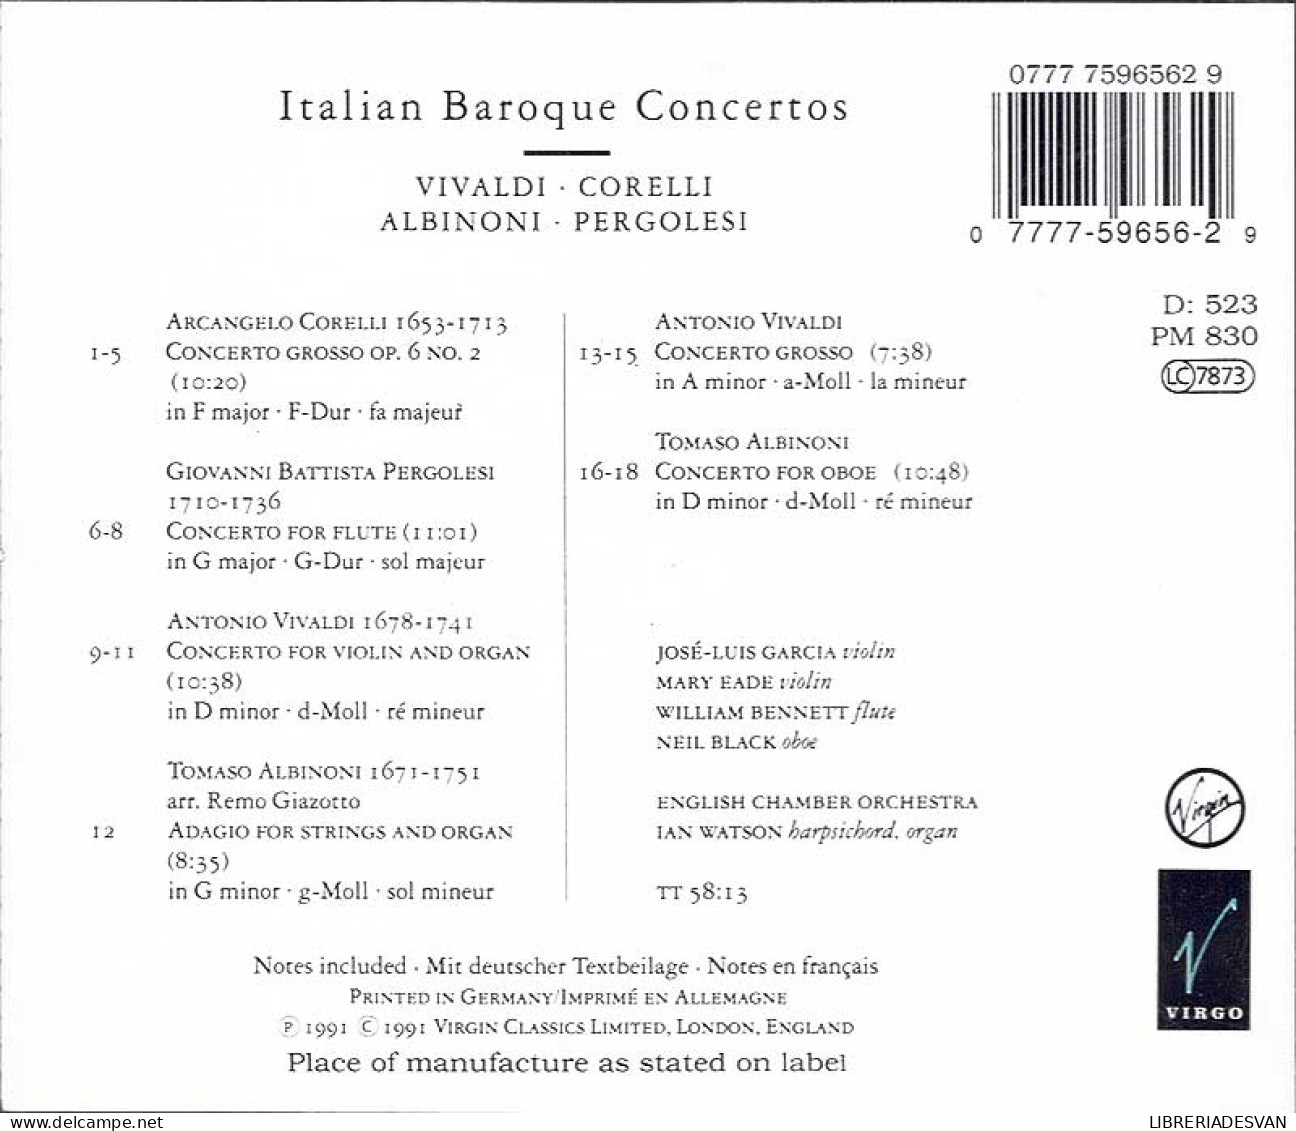 Vivaldi, Corelli, Albinoni, Pergolesi - Italian Baroque Concertos. CD - Classical